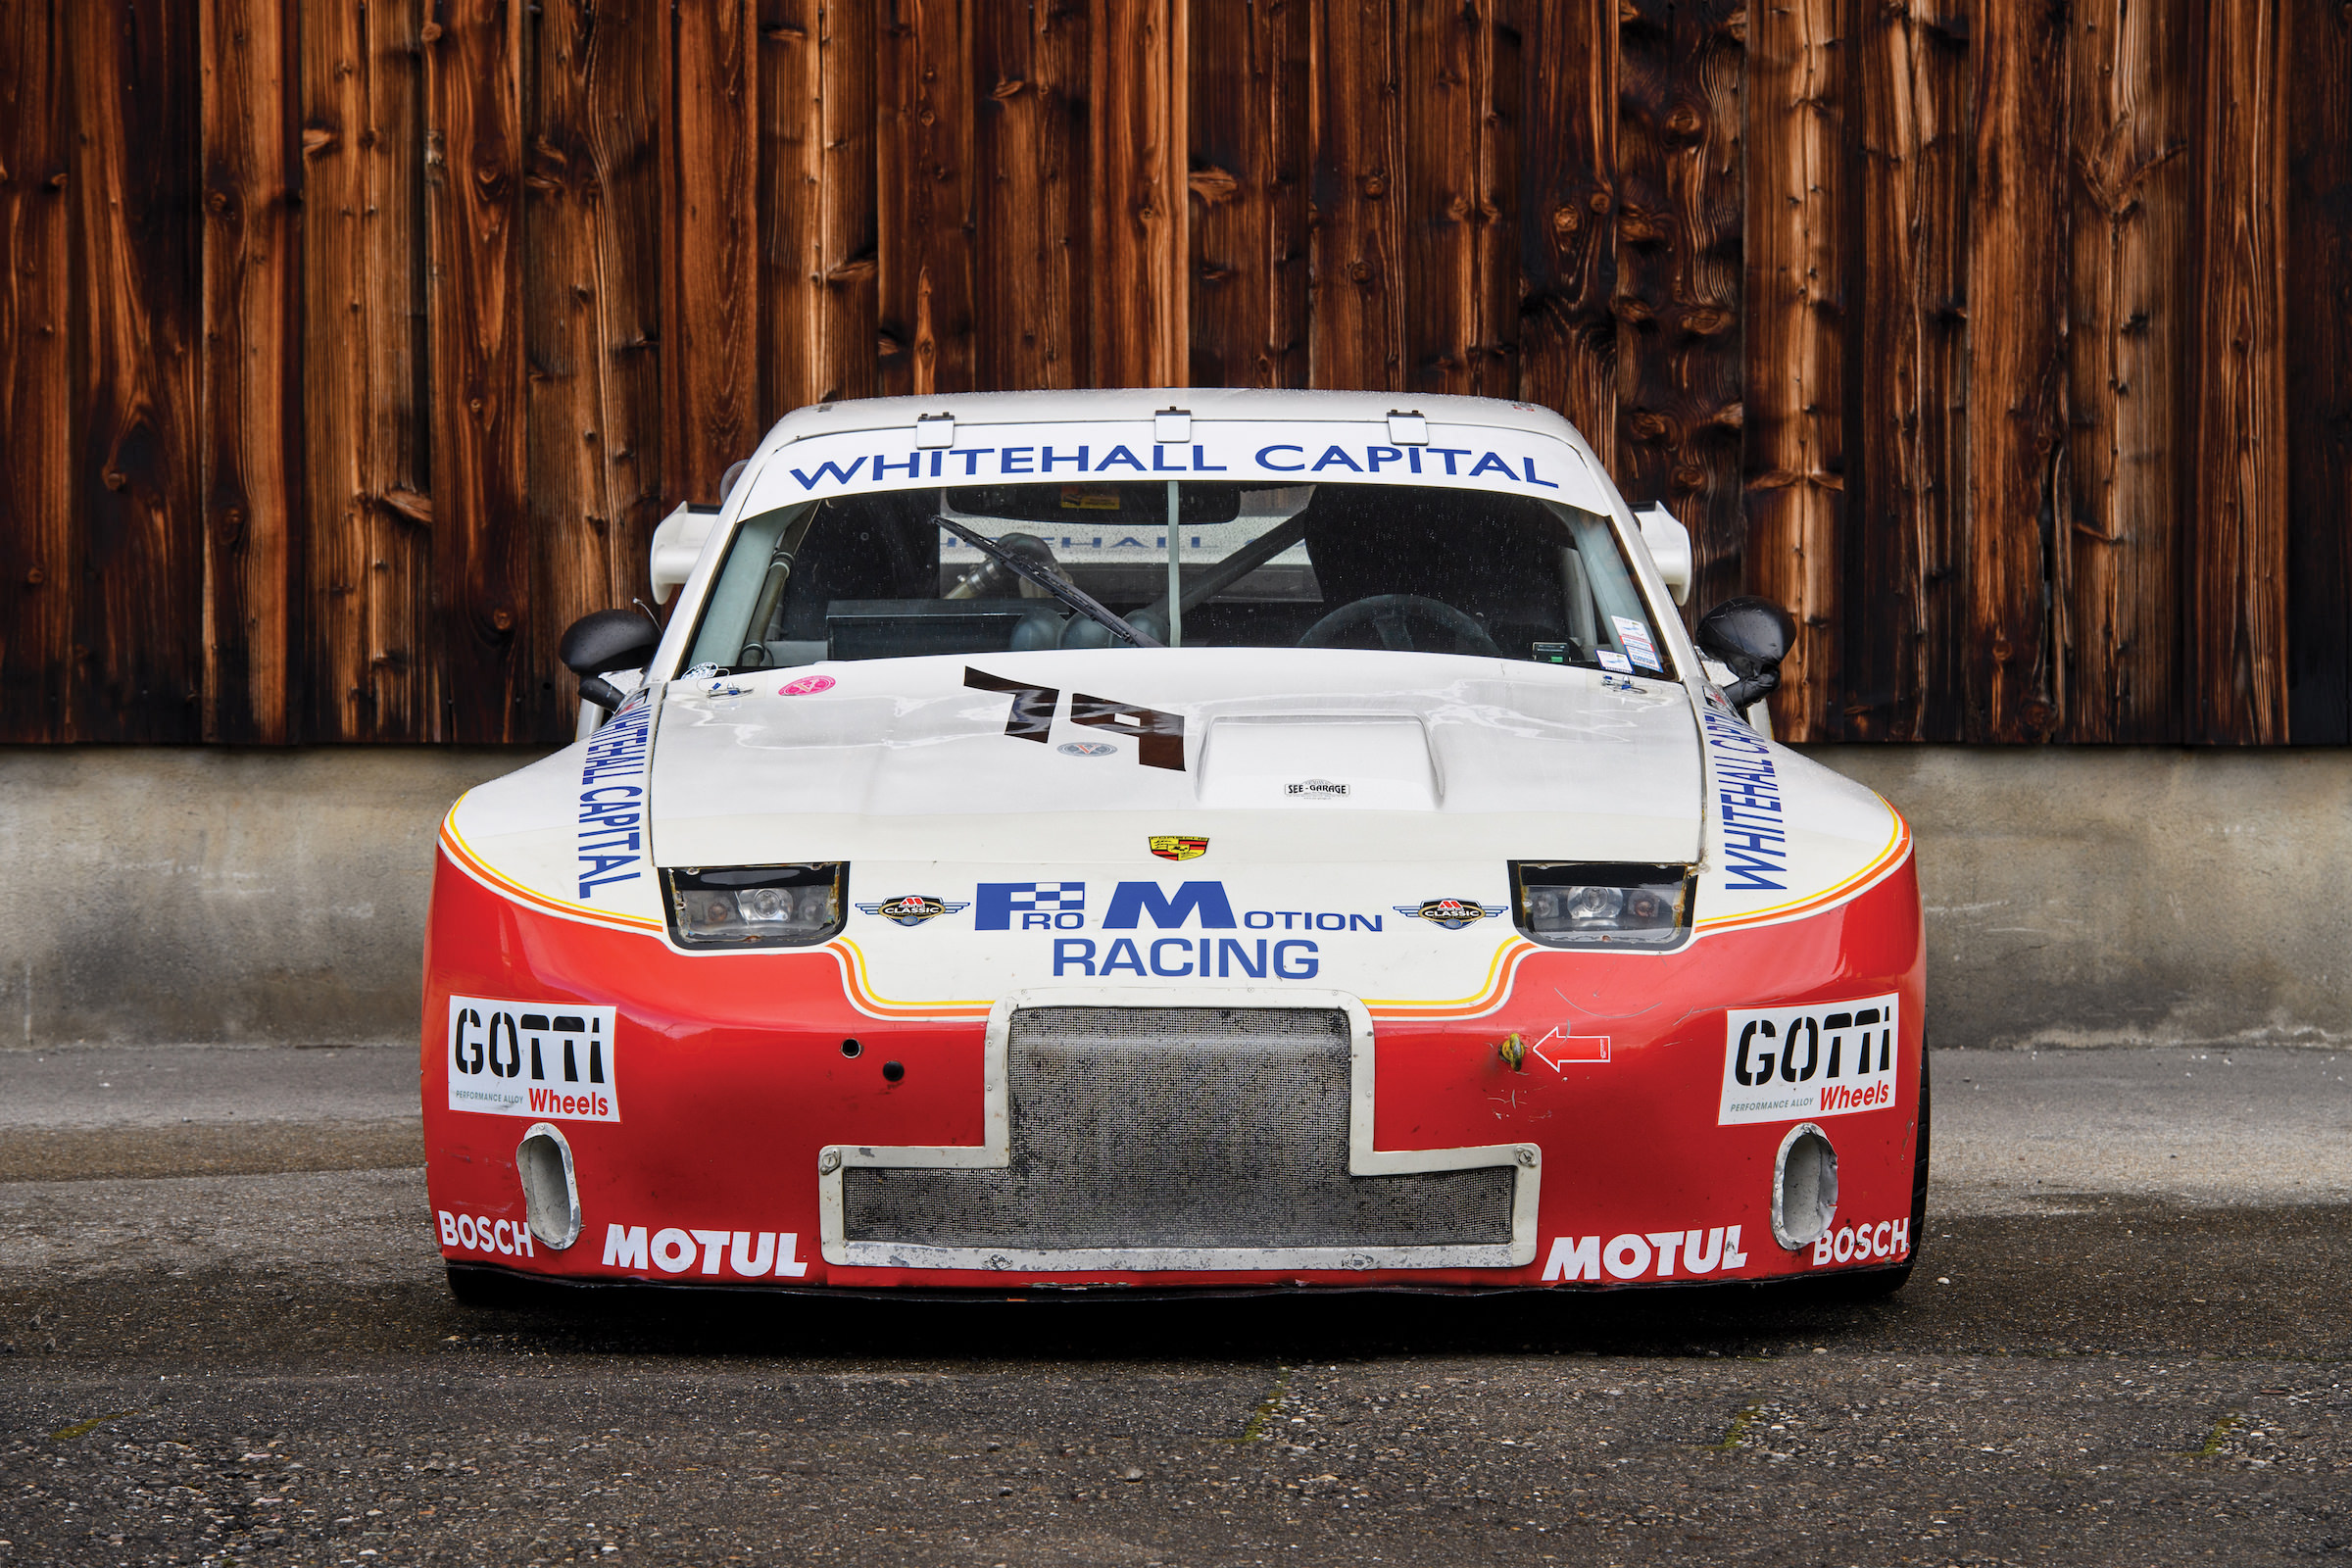 Porsche 924 GTR